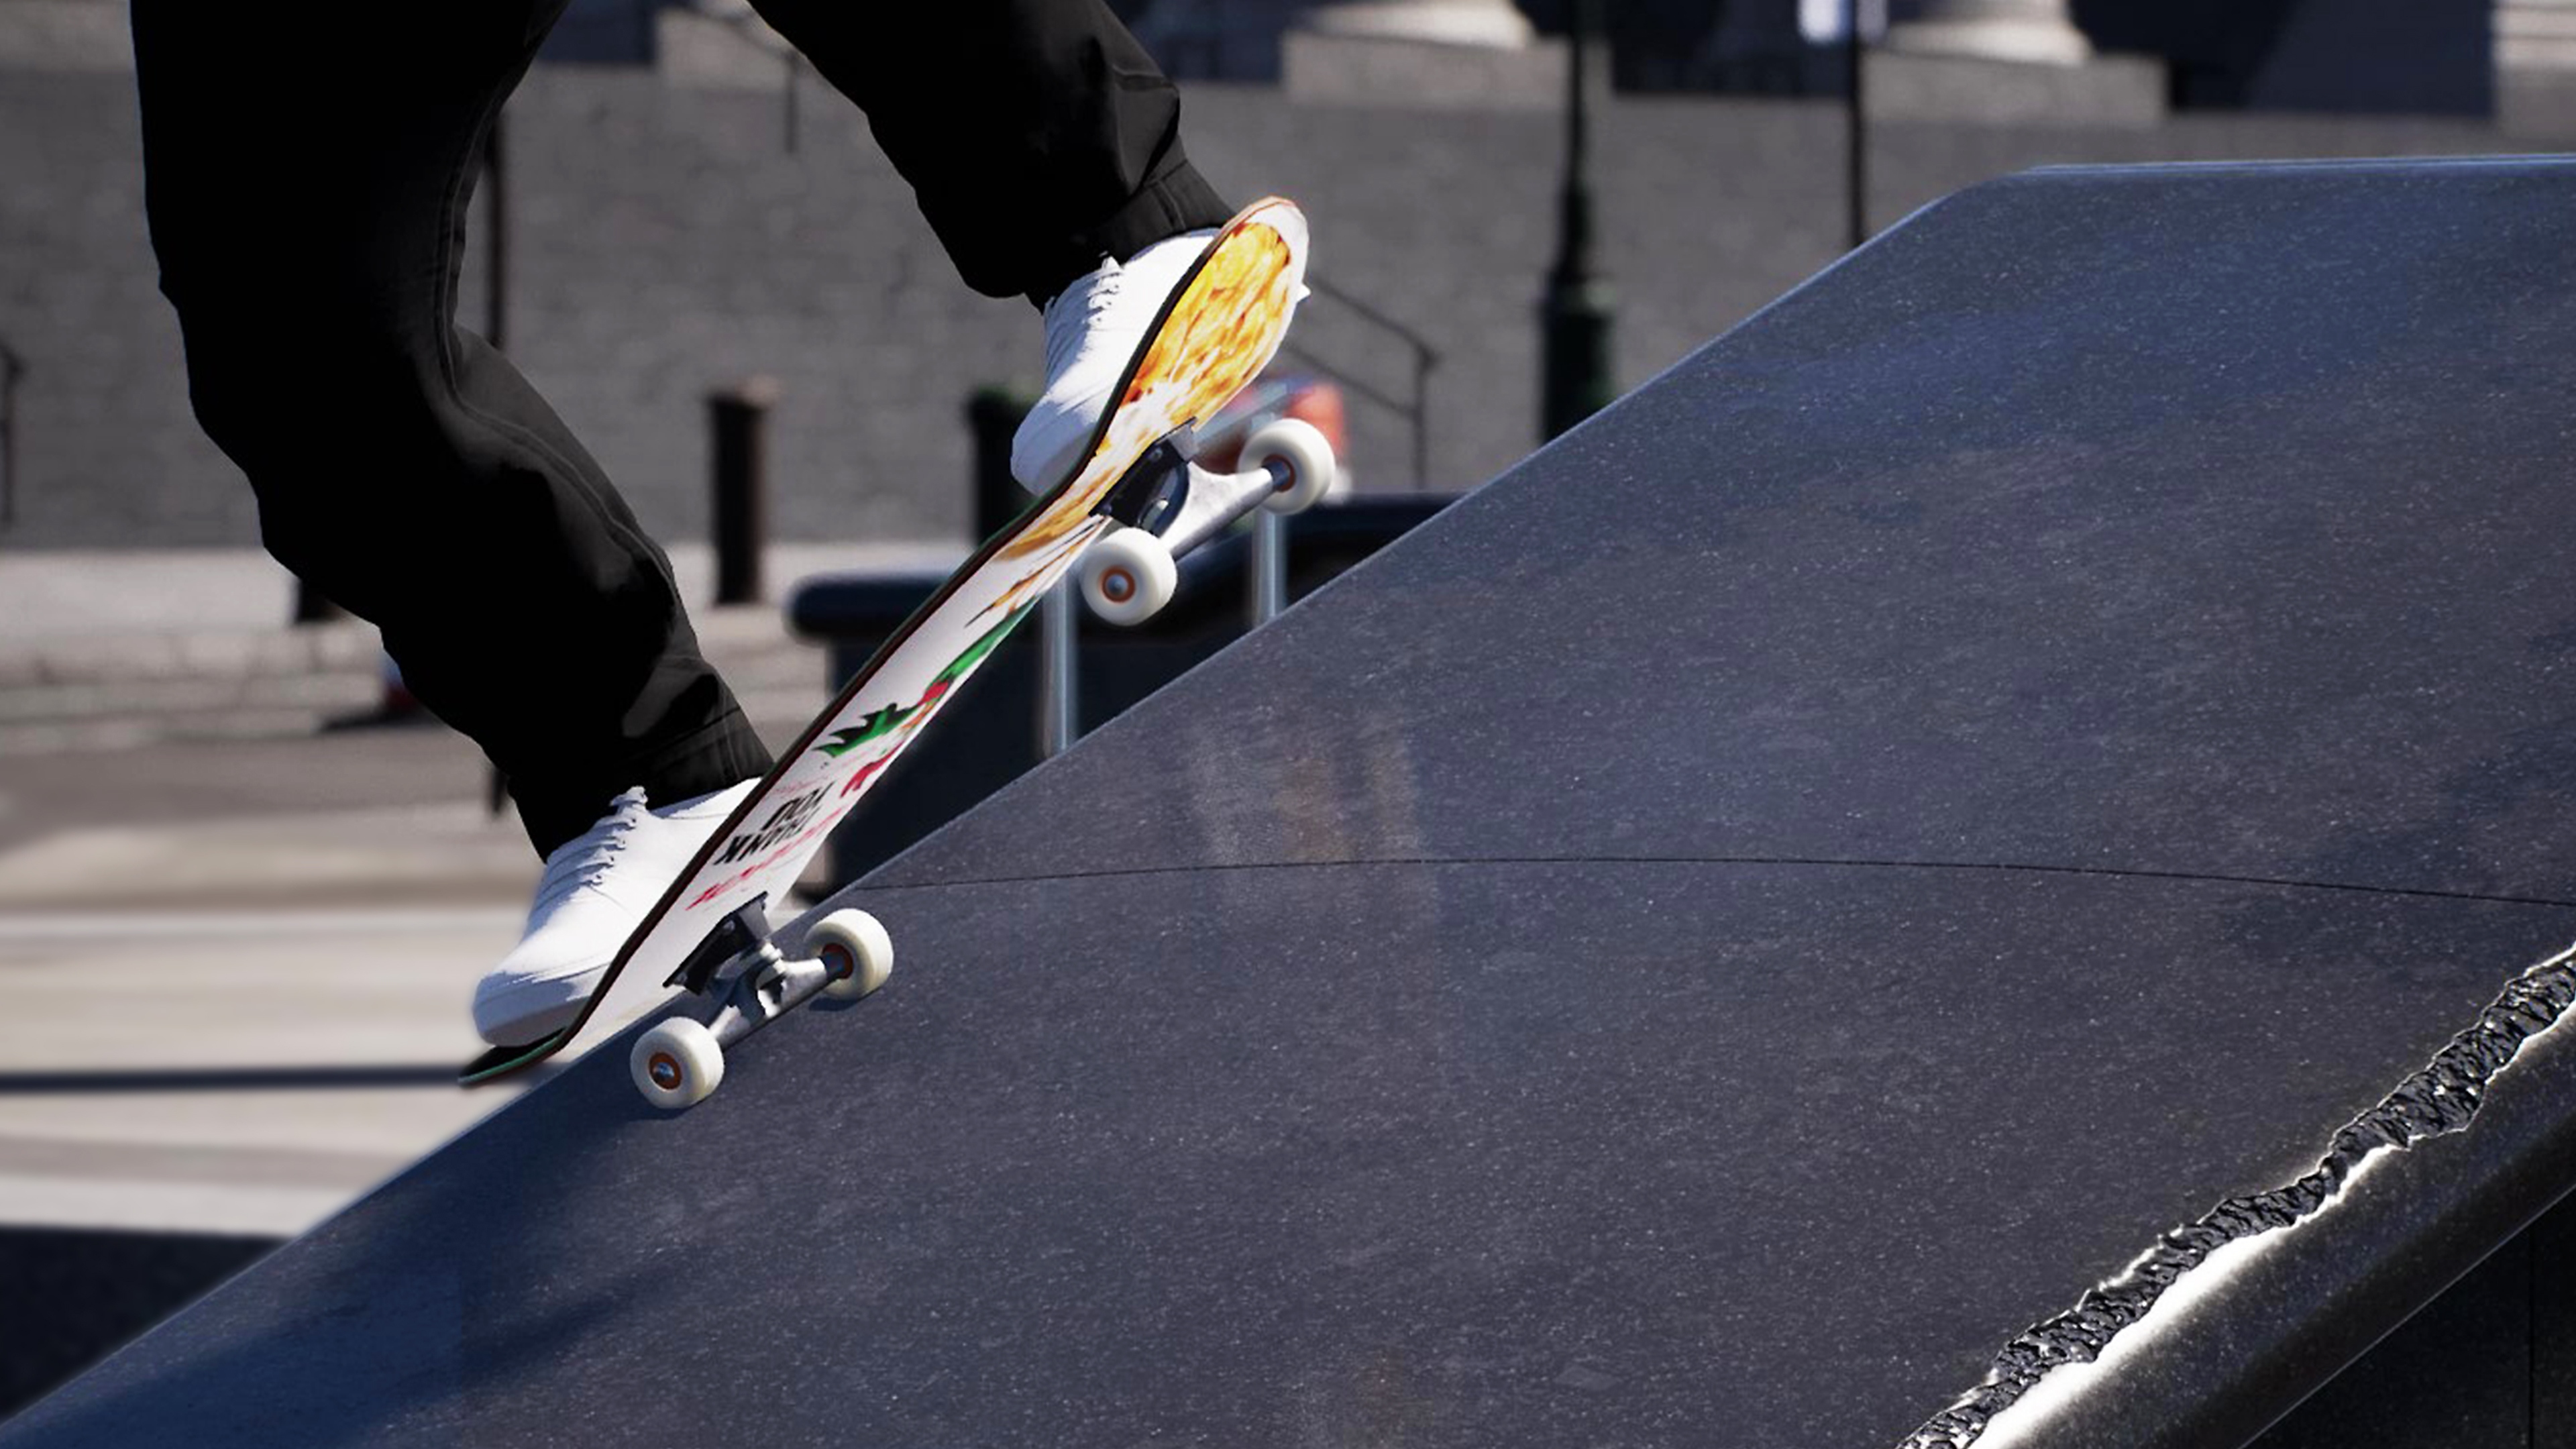 Session: Skate Sim-skærmbillede, der viser en skater, der grinder langs en kant